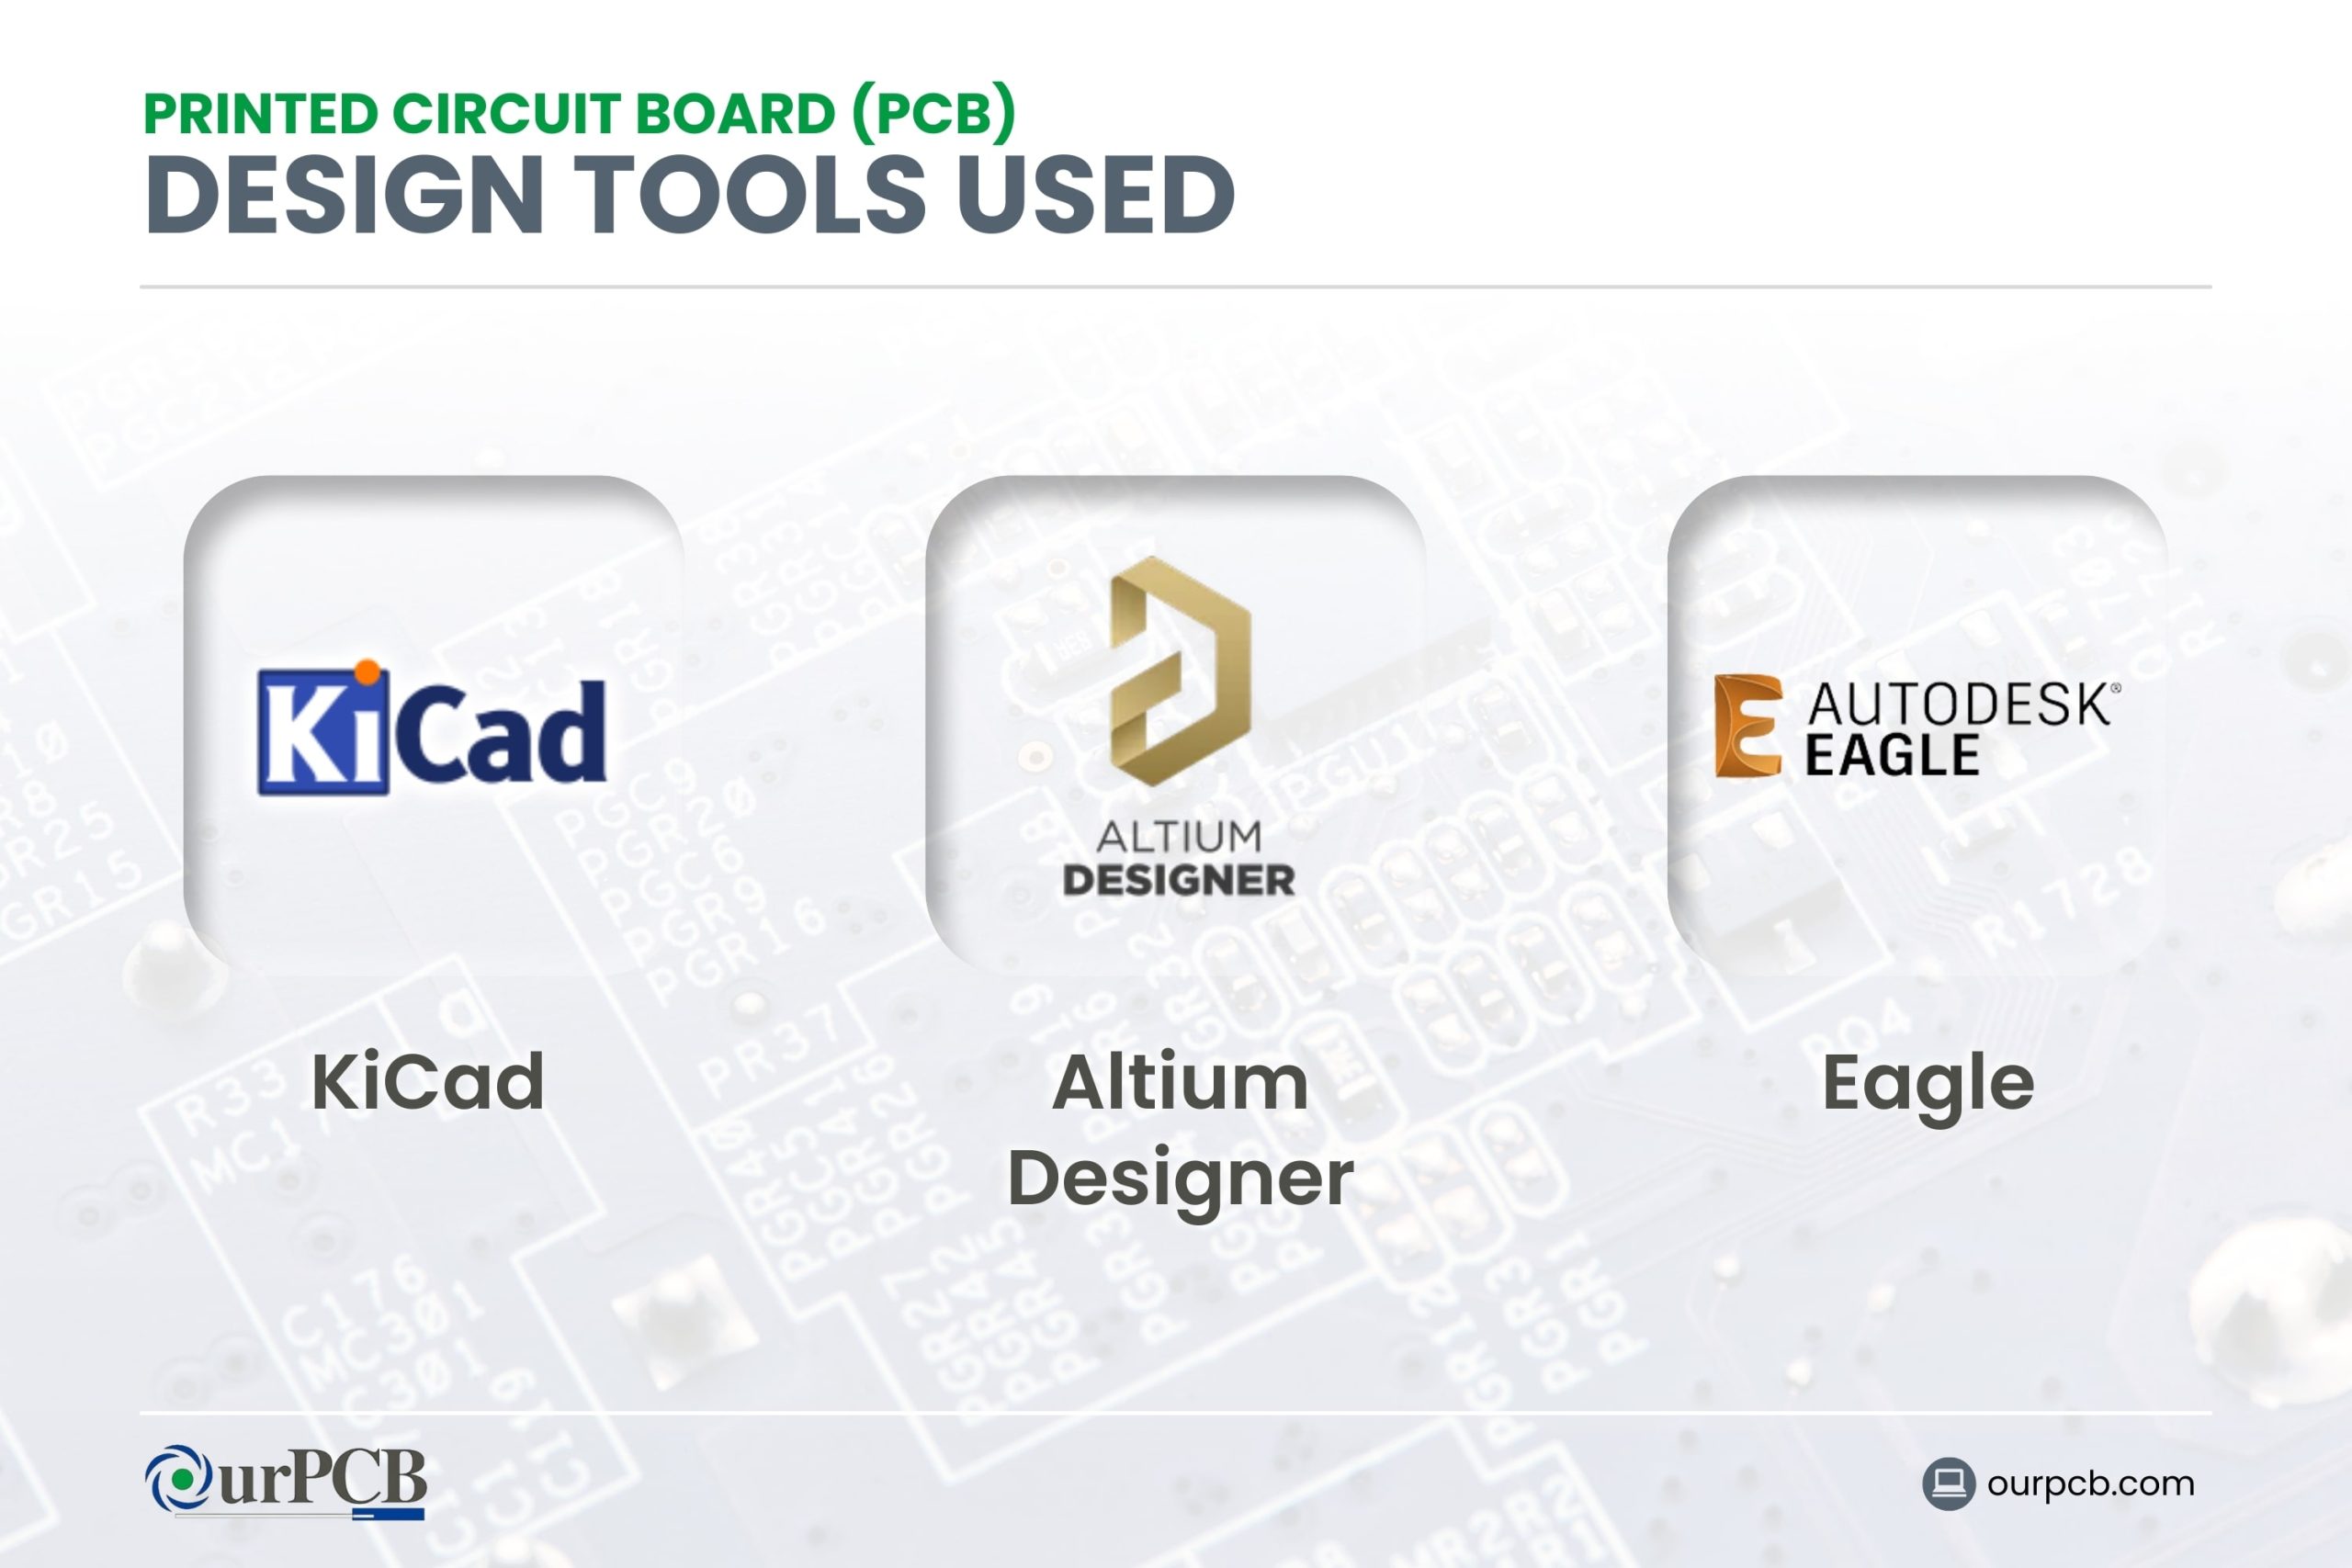 PCB Design Tools Used